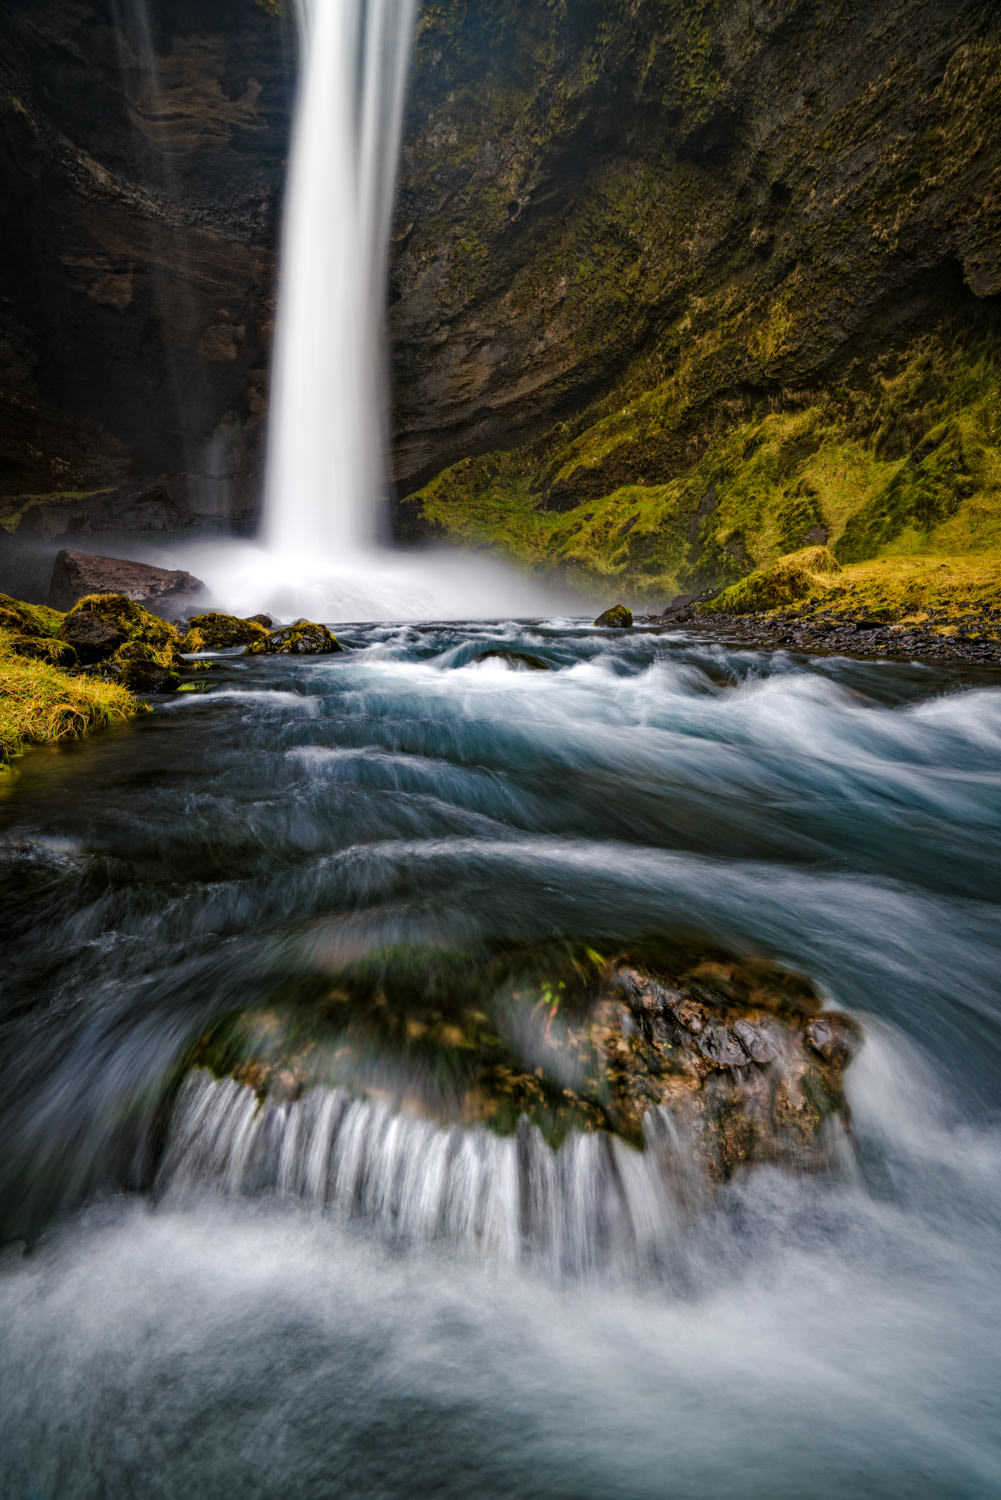 Hidden Waterfall in Iceland. Taken with Sony a7R II + Sony 16-35 f/4.